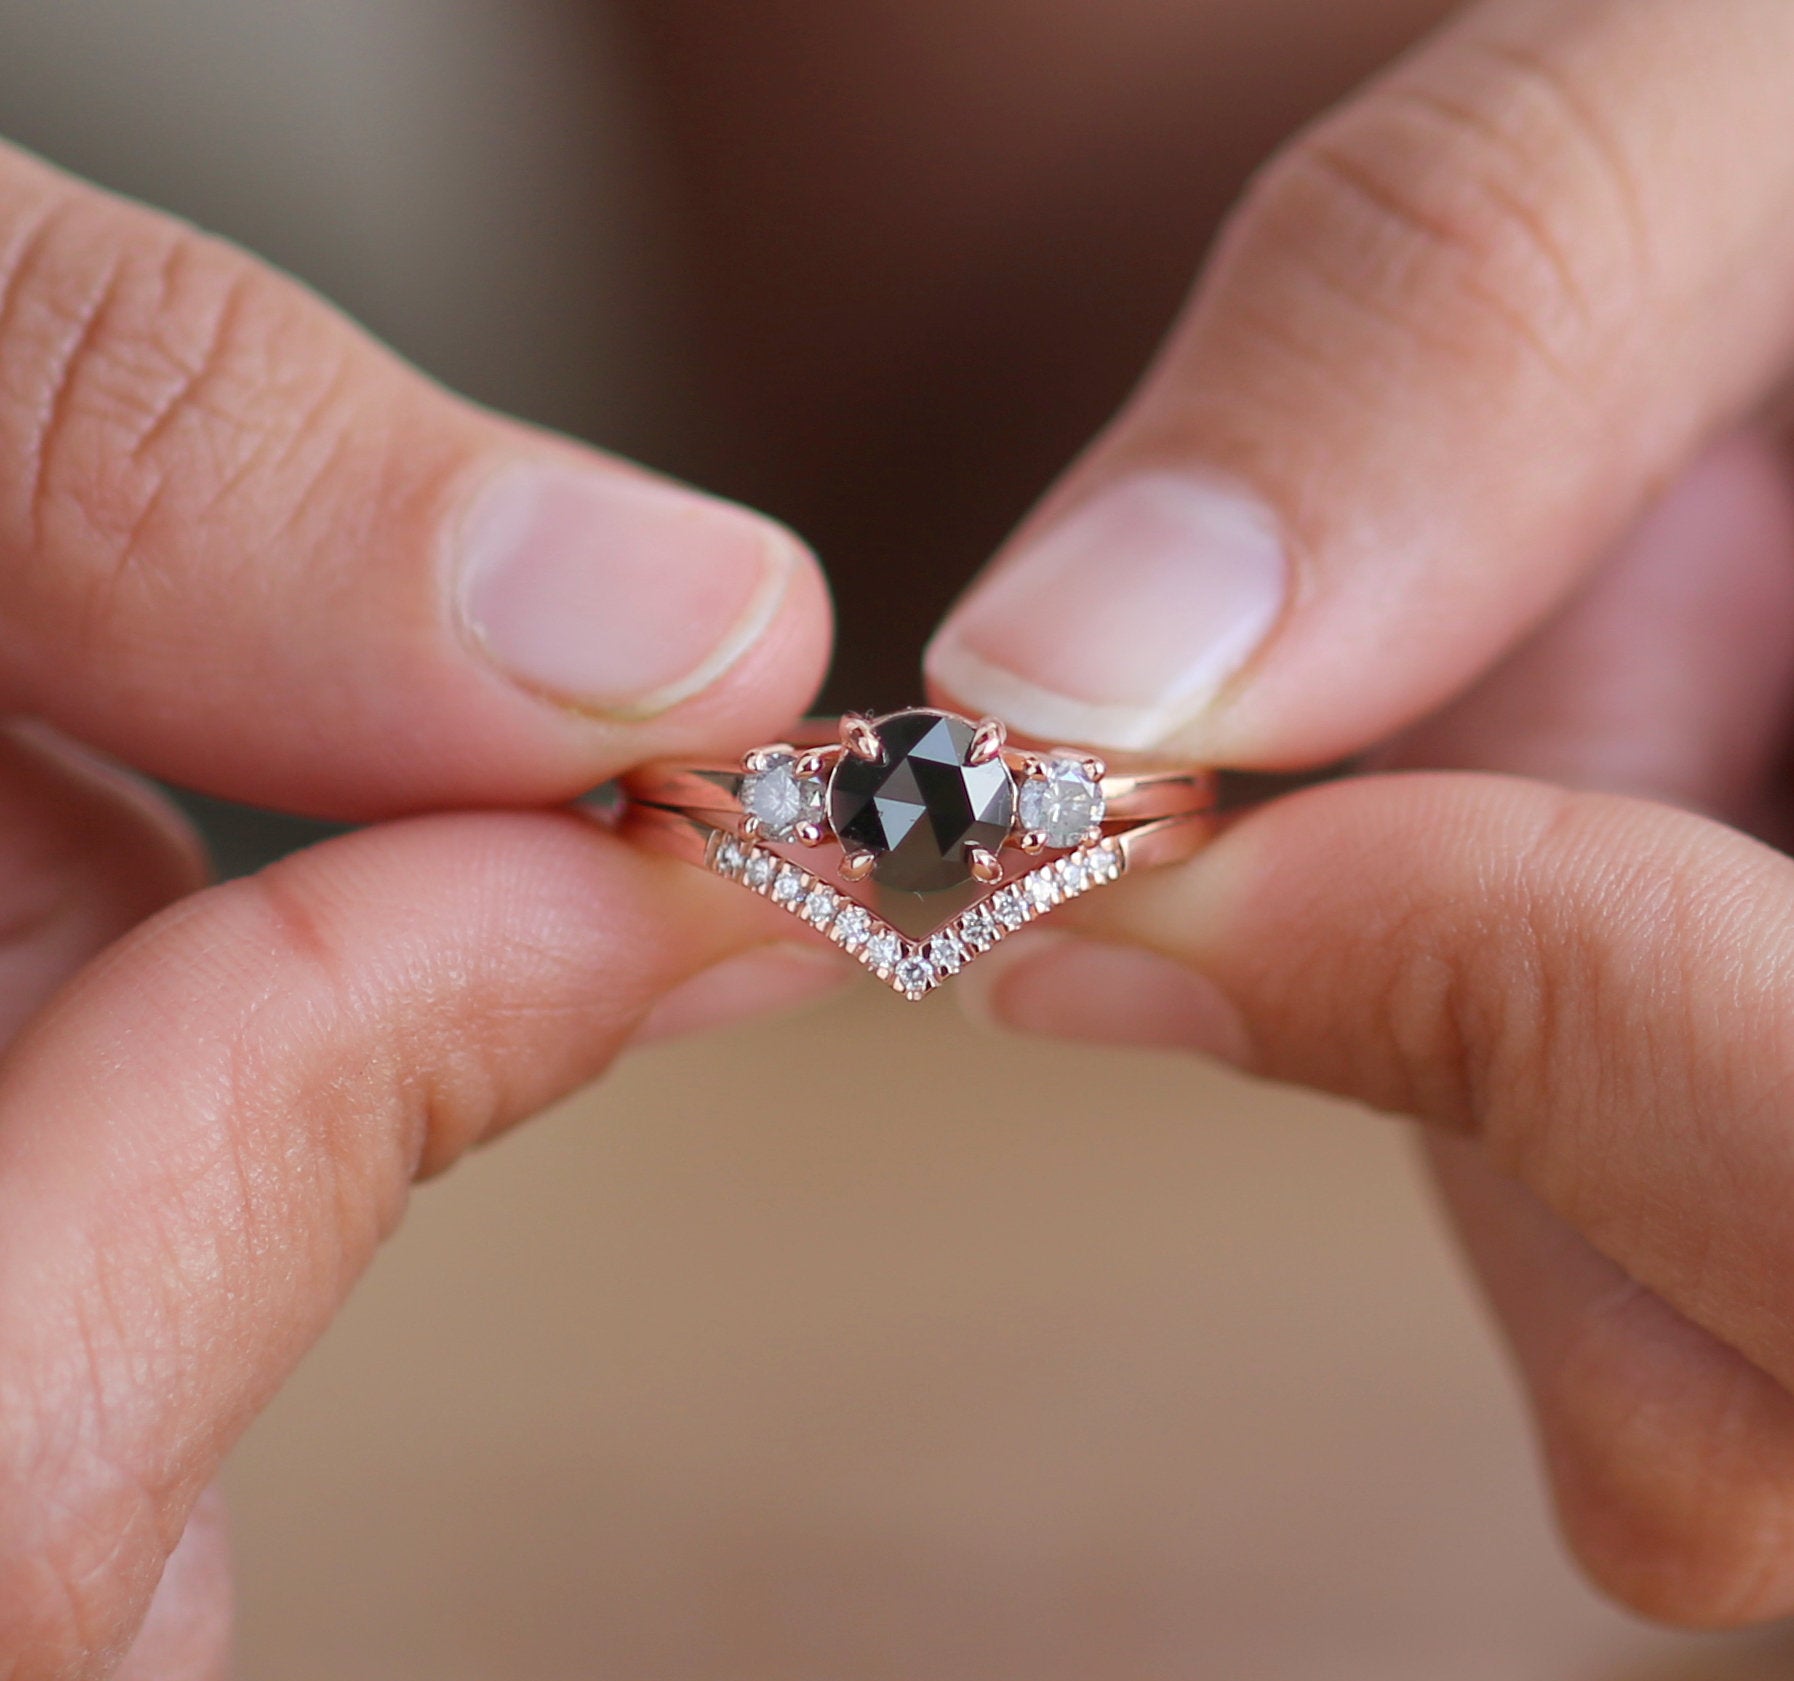 Round Rose Cut Diamond 14K Solid Rose Gold Ring Set Engagement Wedding Gift Ring KD686